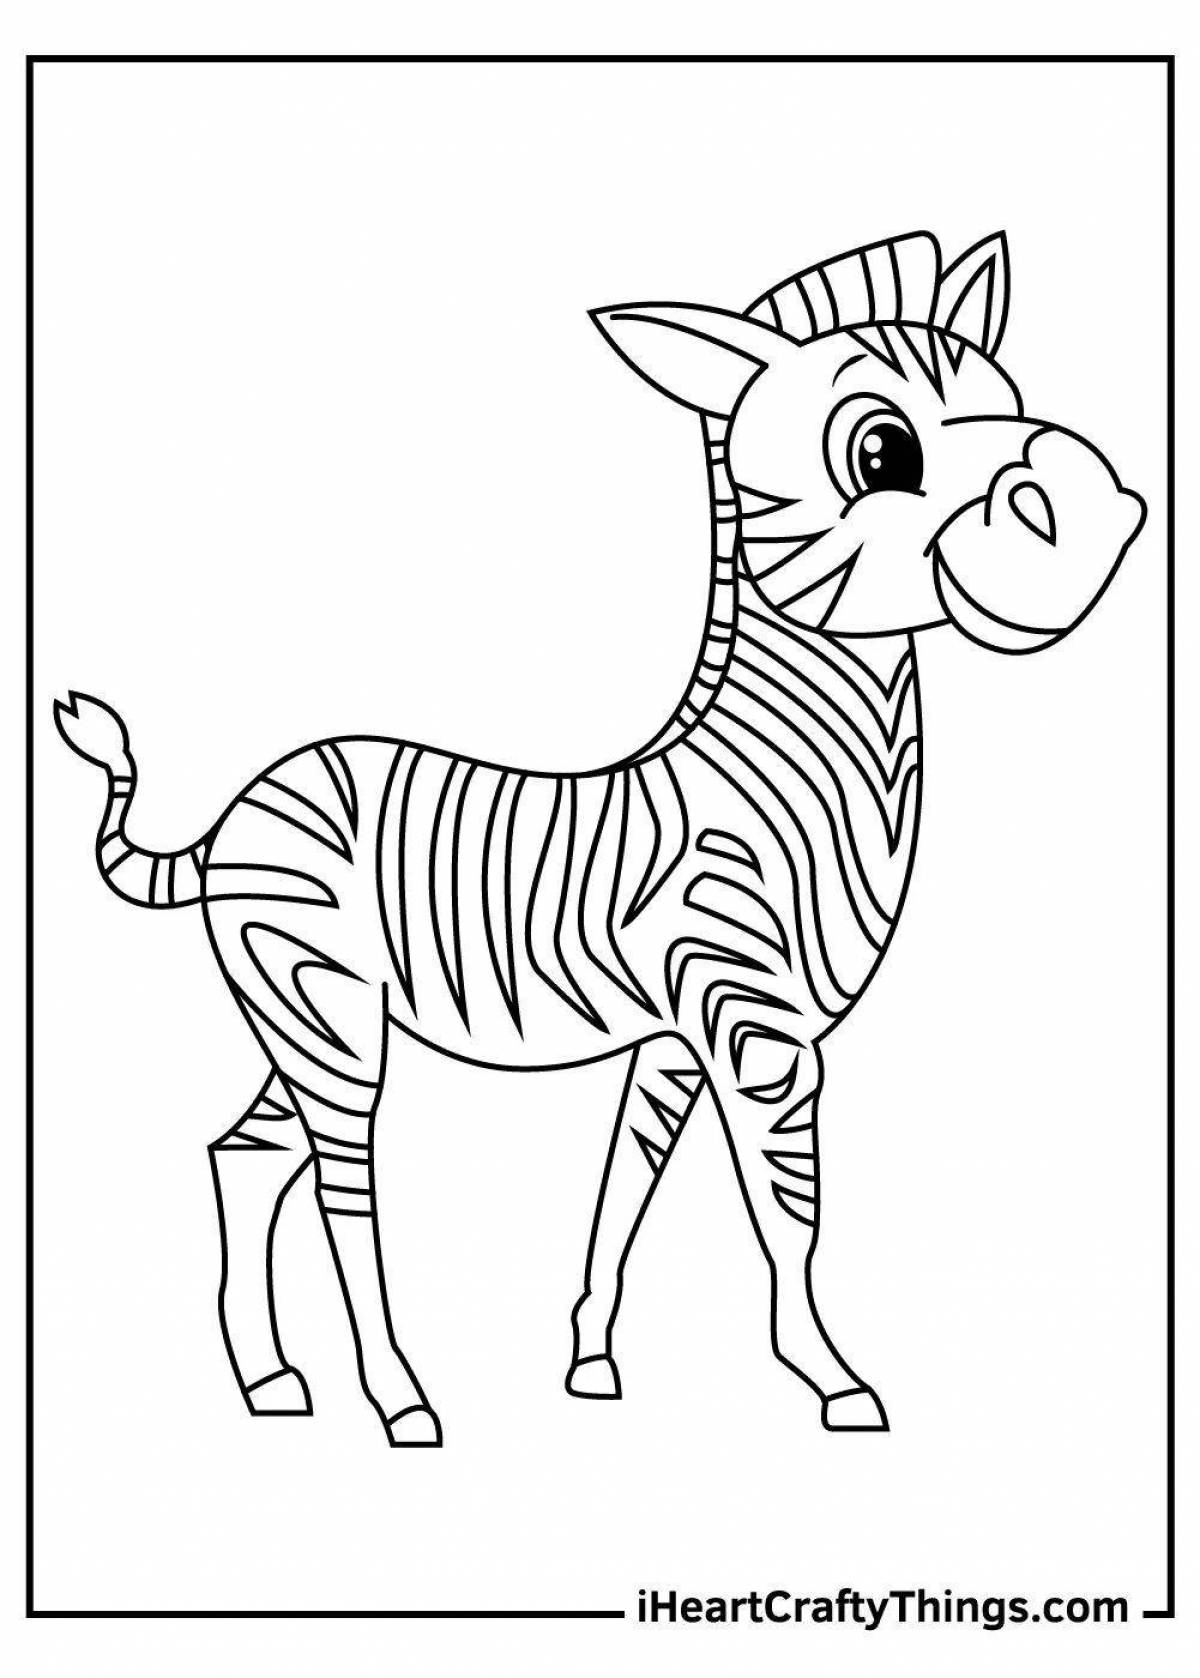 Уникальная раскраска зебра для дошкольников 3-4 лет